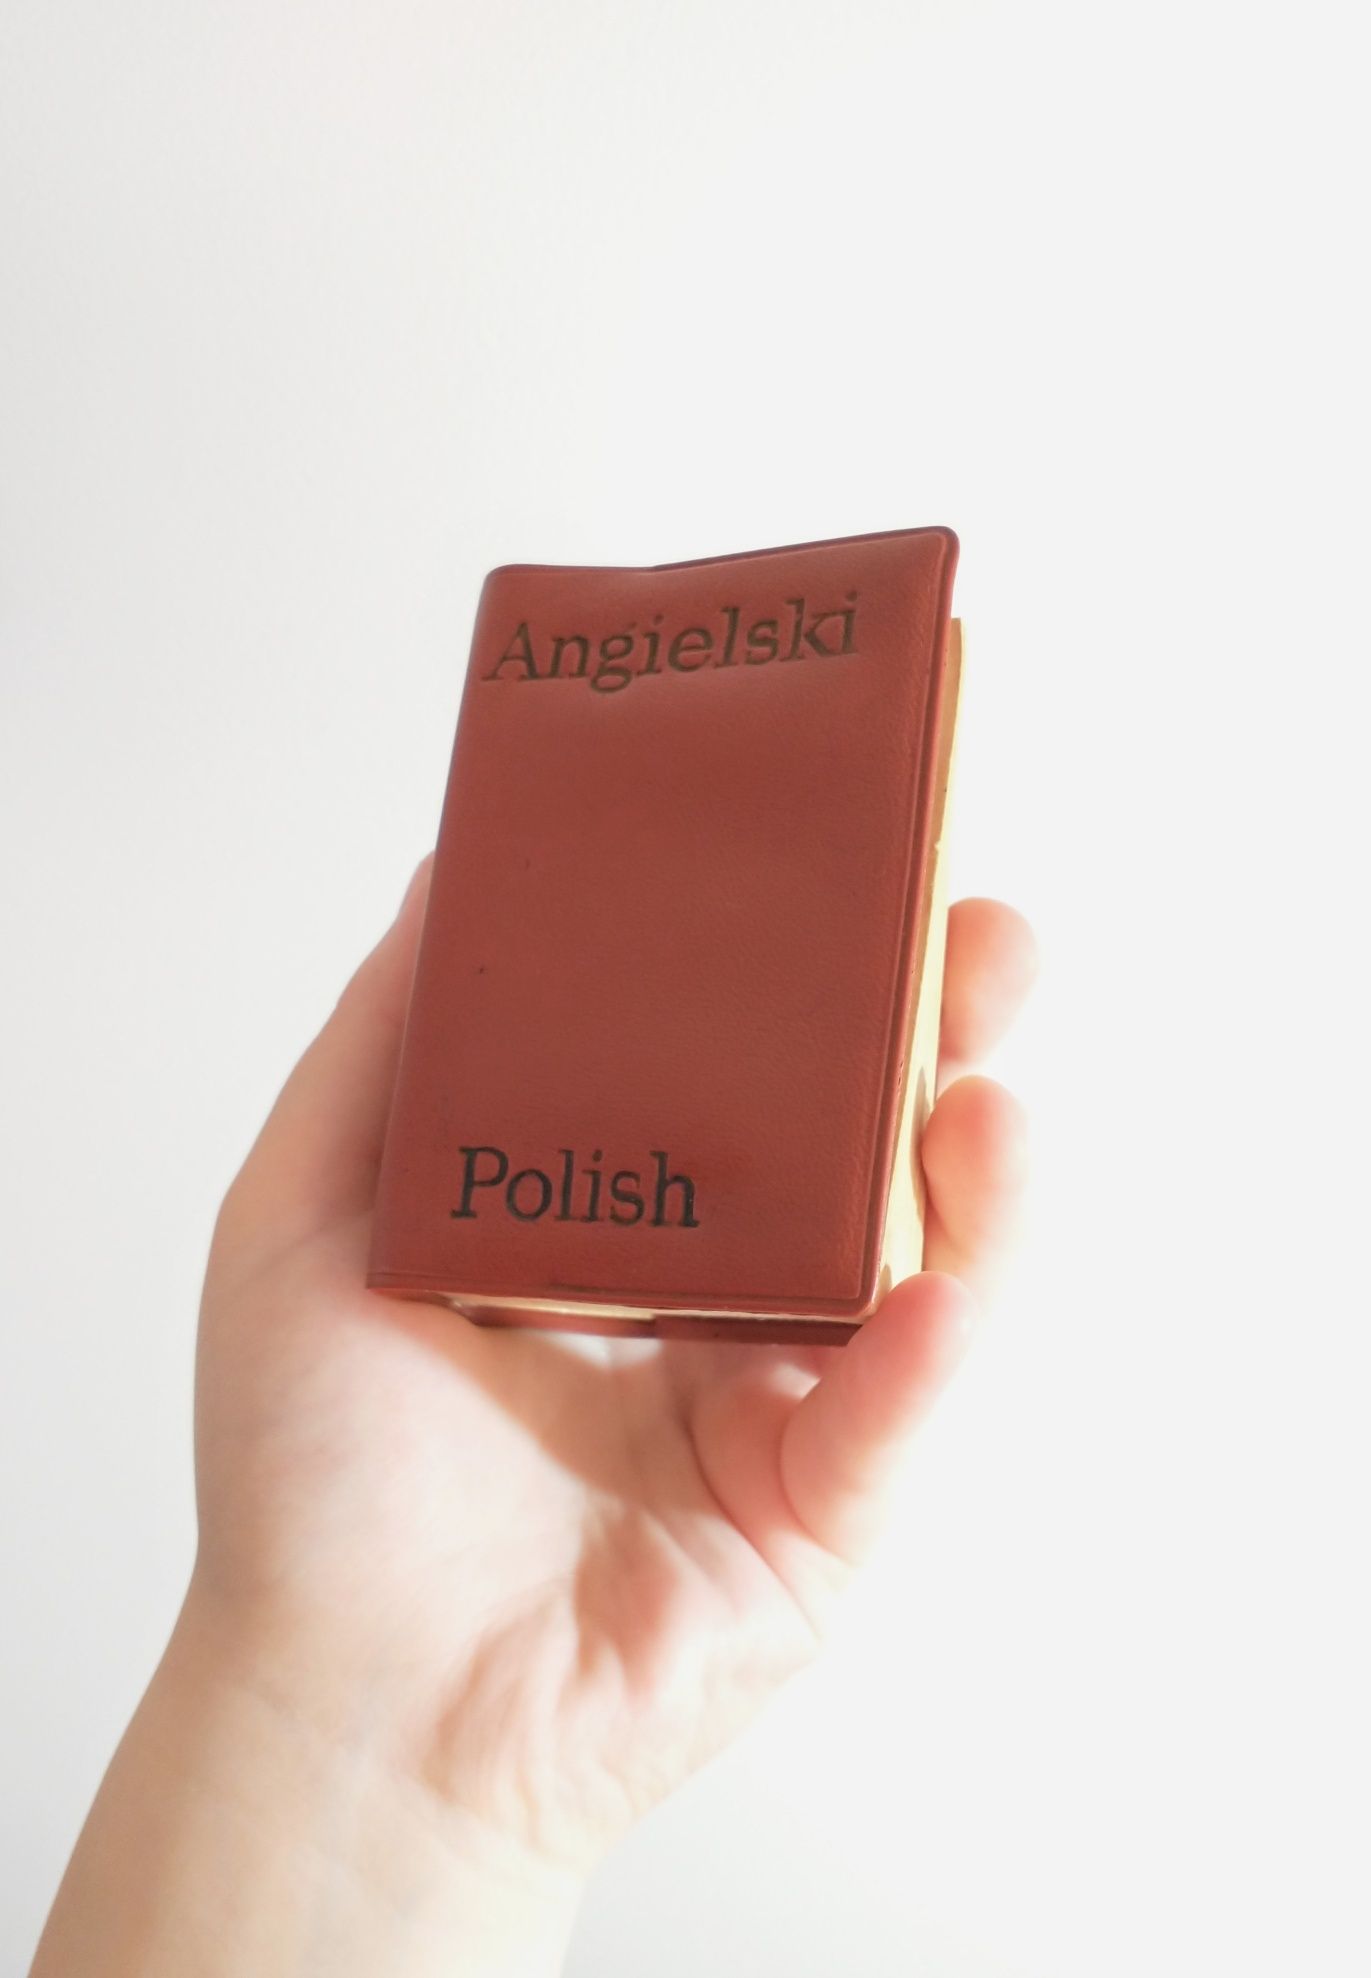 Kieszonkowy słownik angielsko-polski z 1968